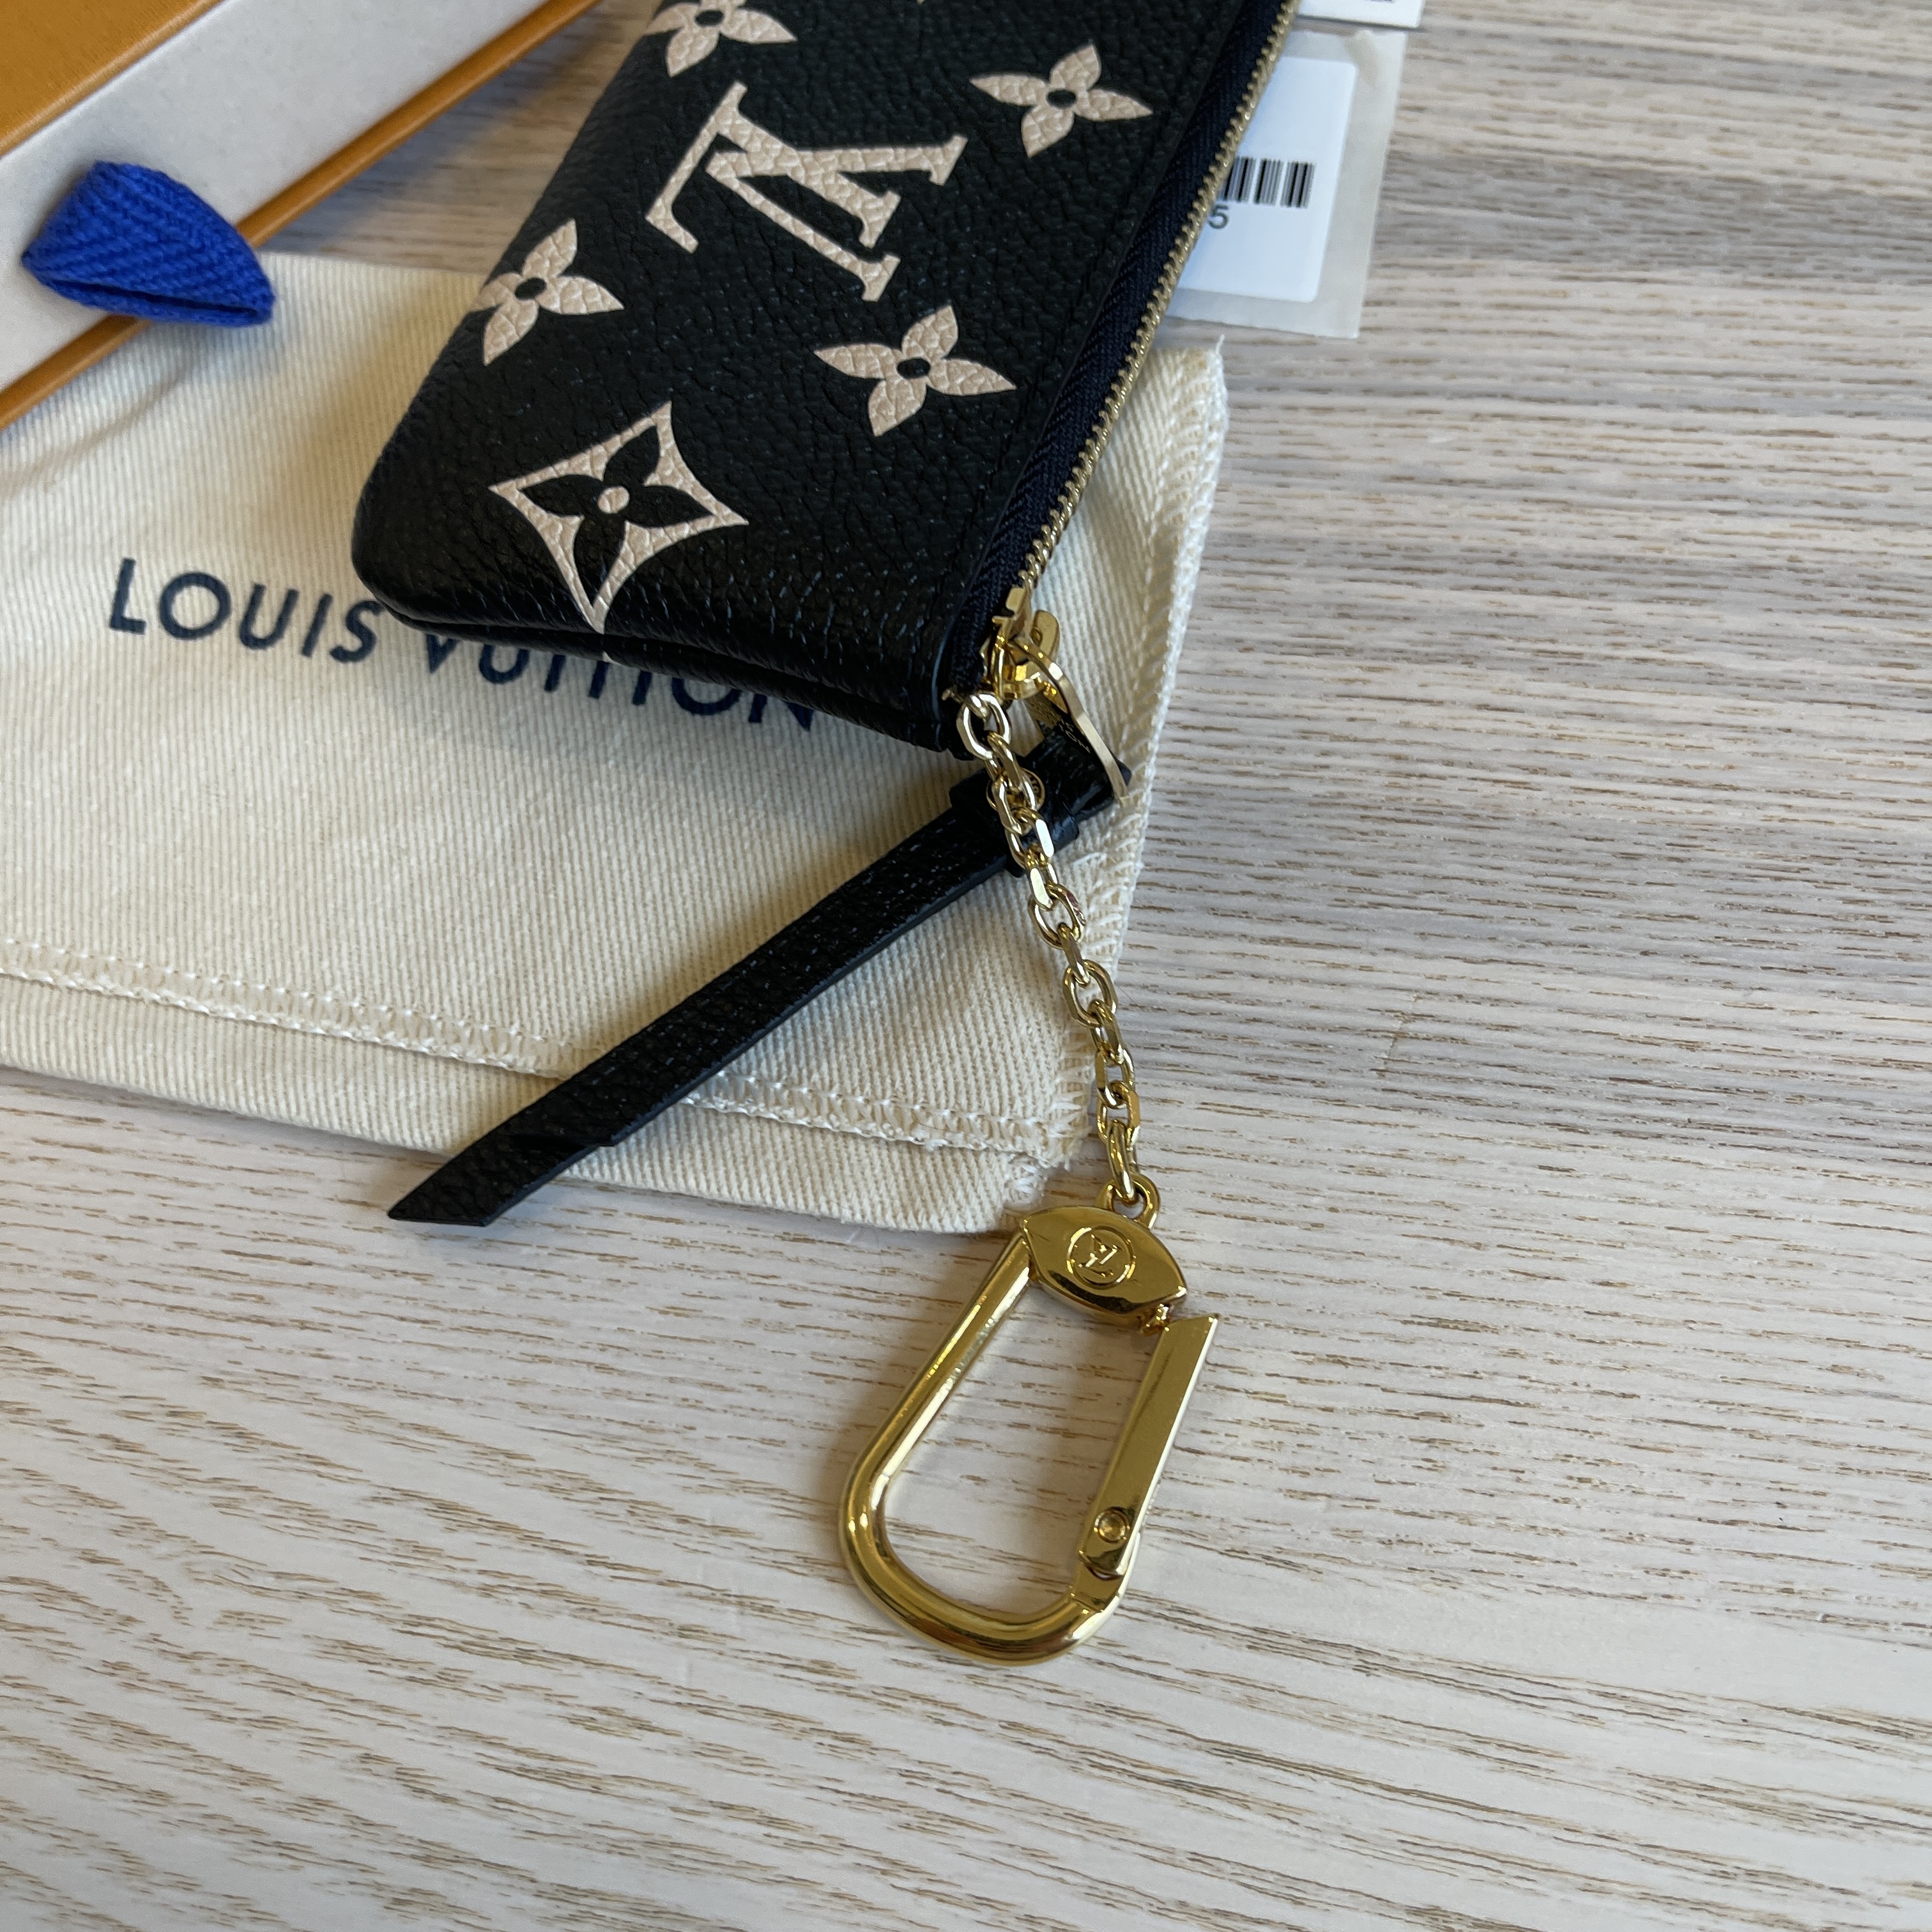 Louis Vuitton Monogram Empreinte Leather Key Pouch Bicolor Black